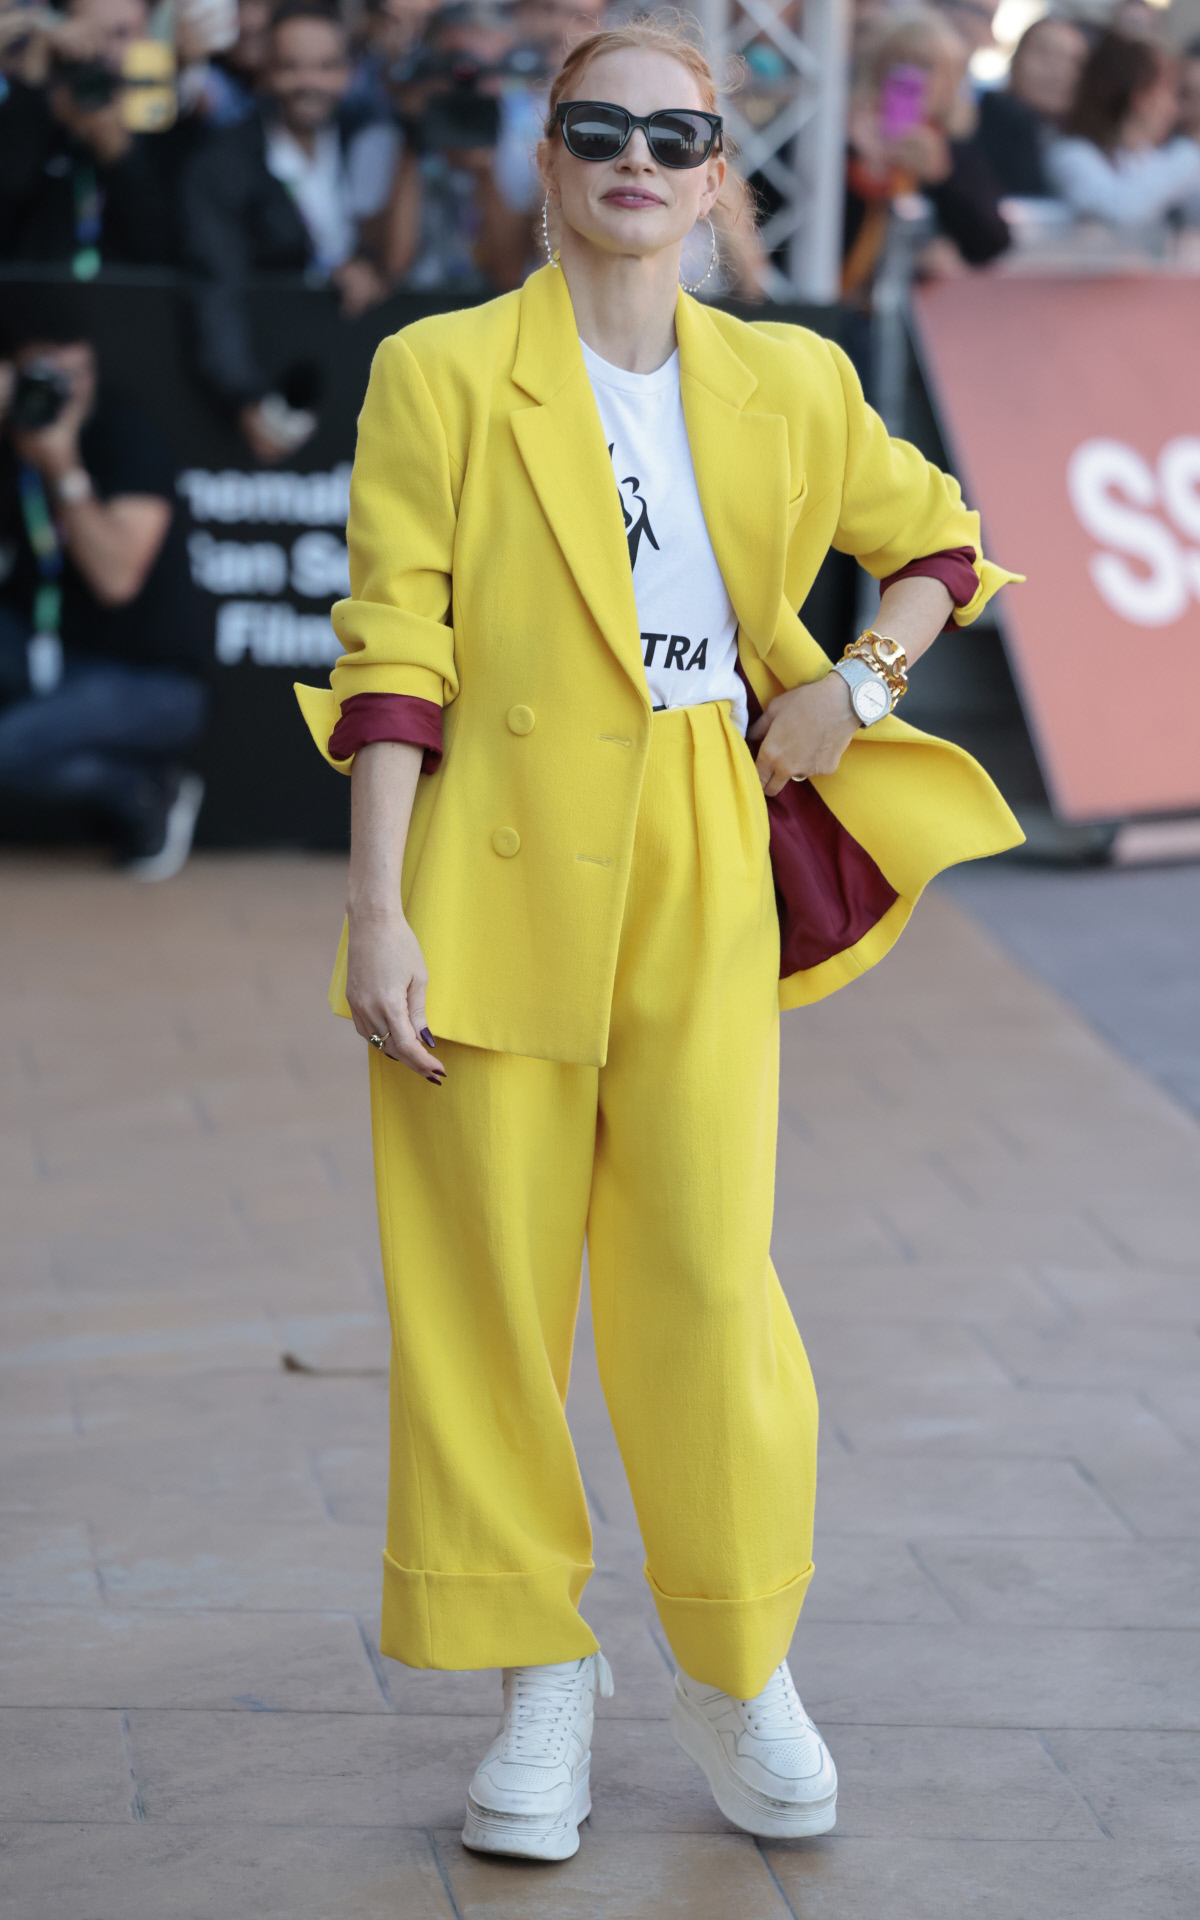 Jessica Chastain con traje de chaqueta amarillo con camiseta reivindicativa.